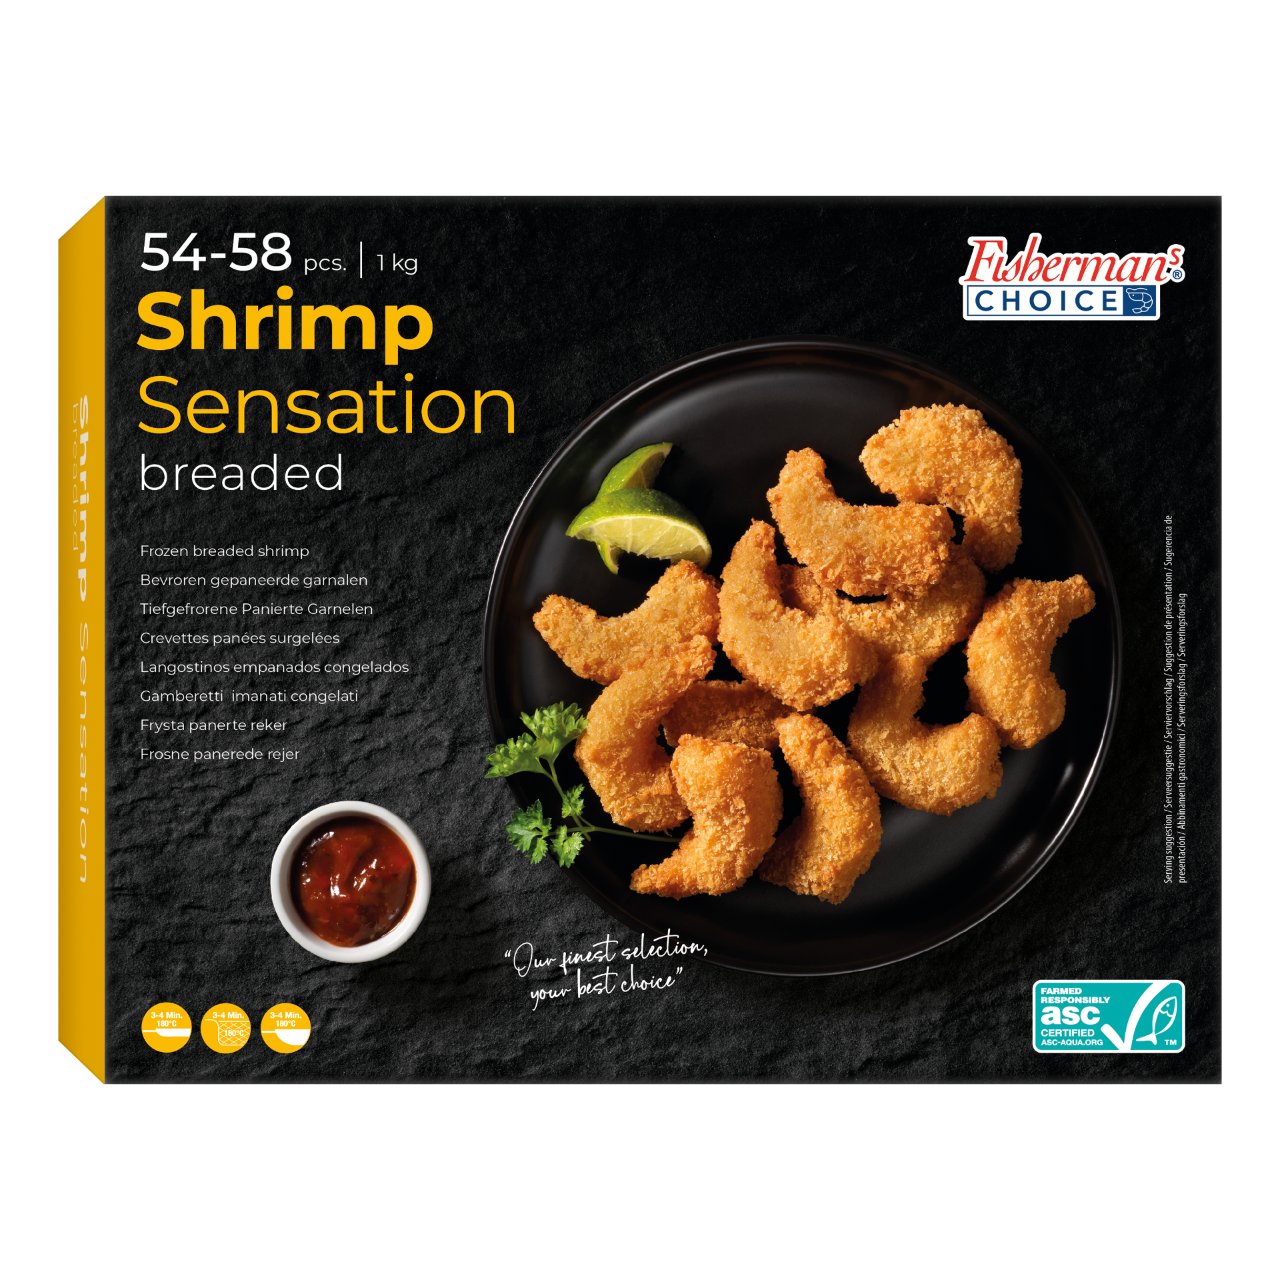 Shrimp Sensation gepaneerde garnalen